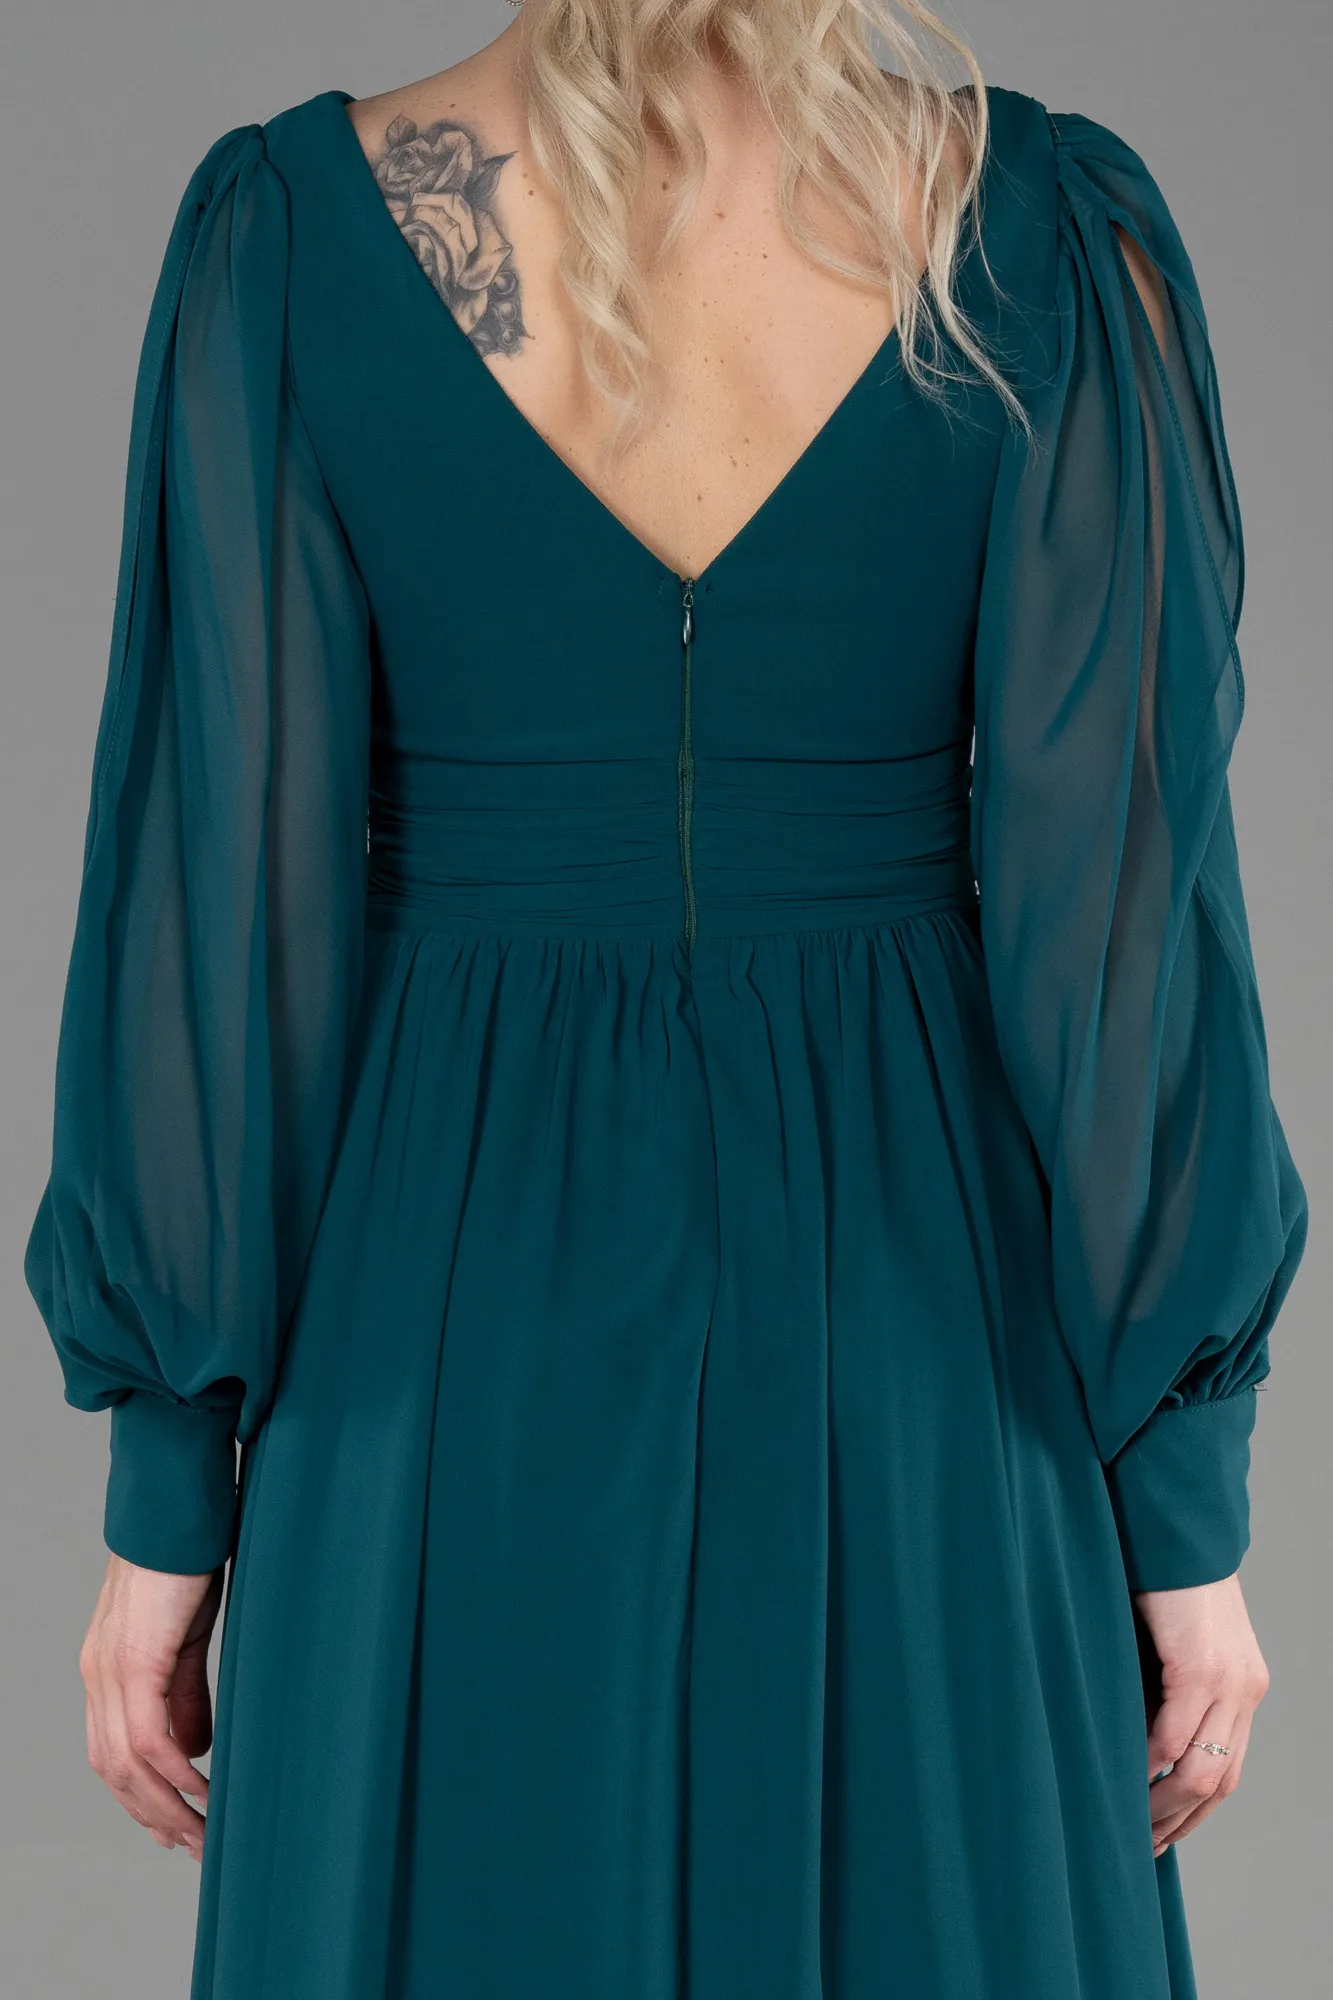 Emerald Green-Long Chiffon Evening Dress ABU1702